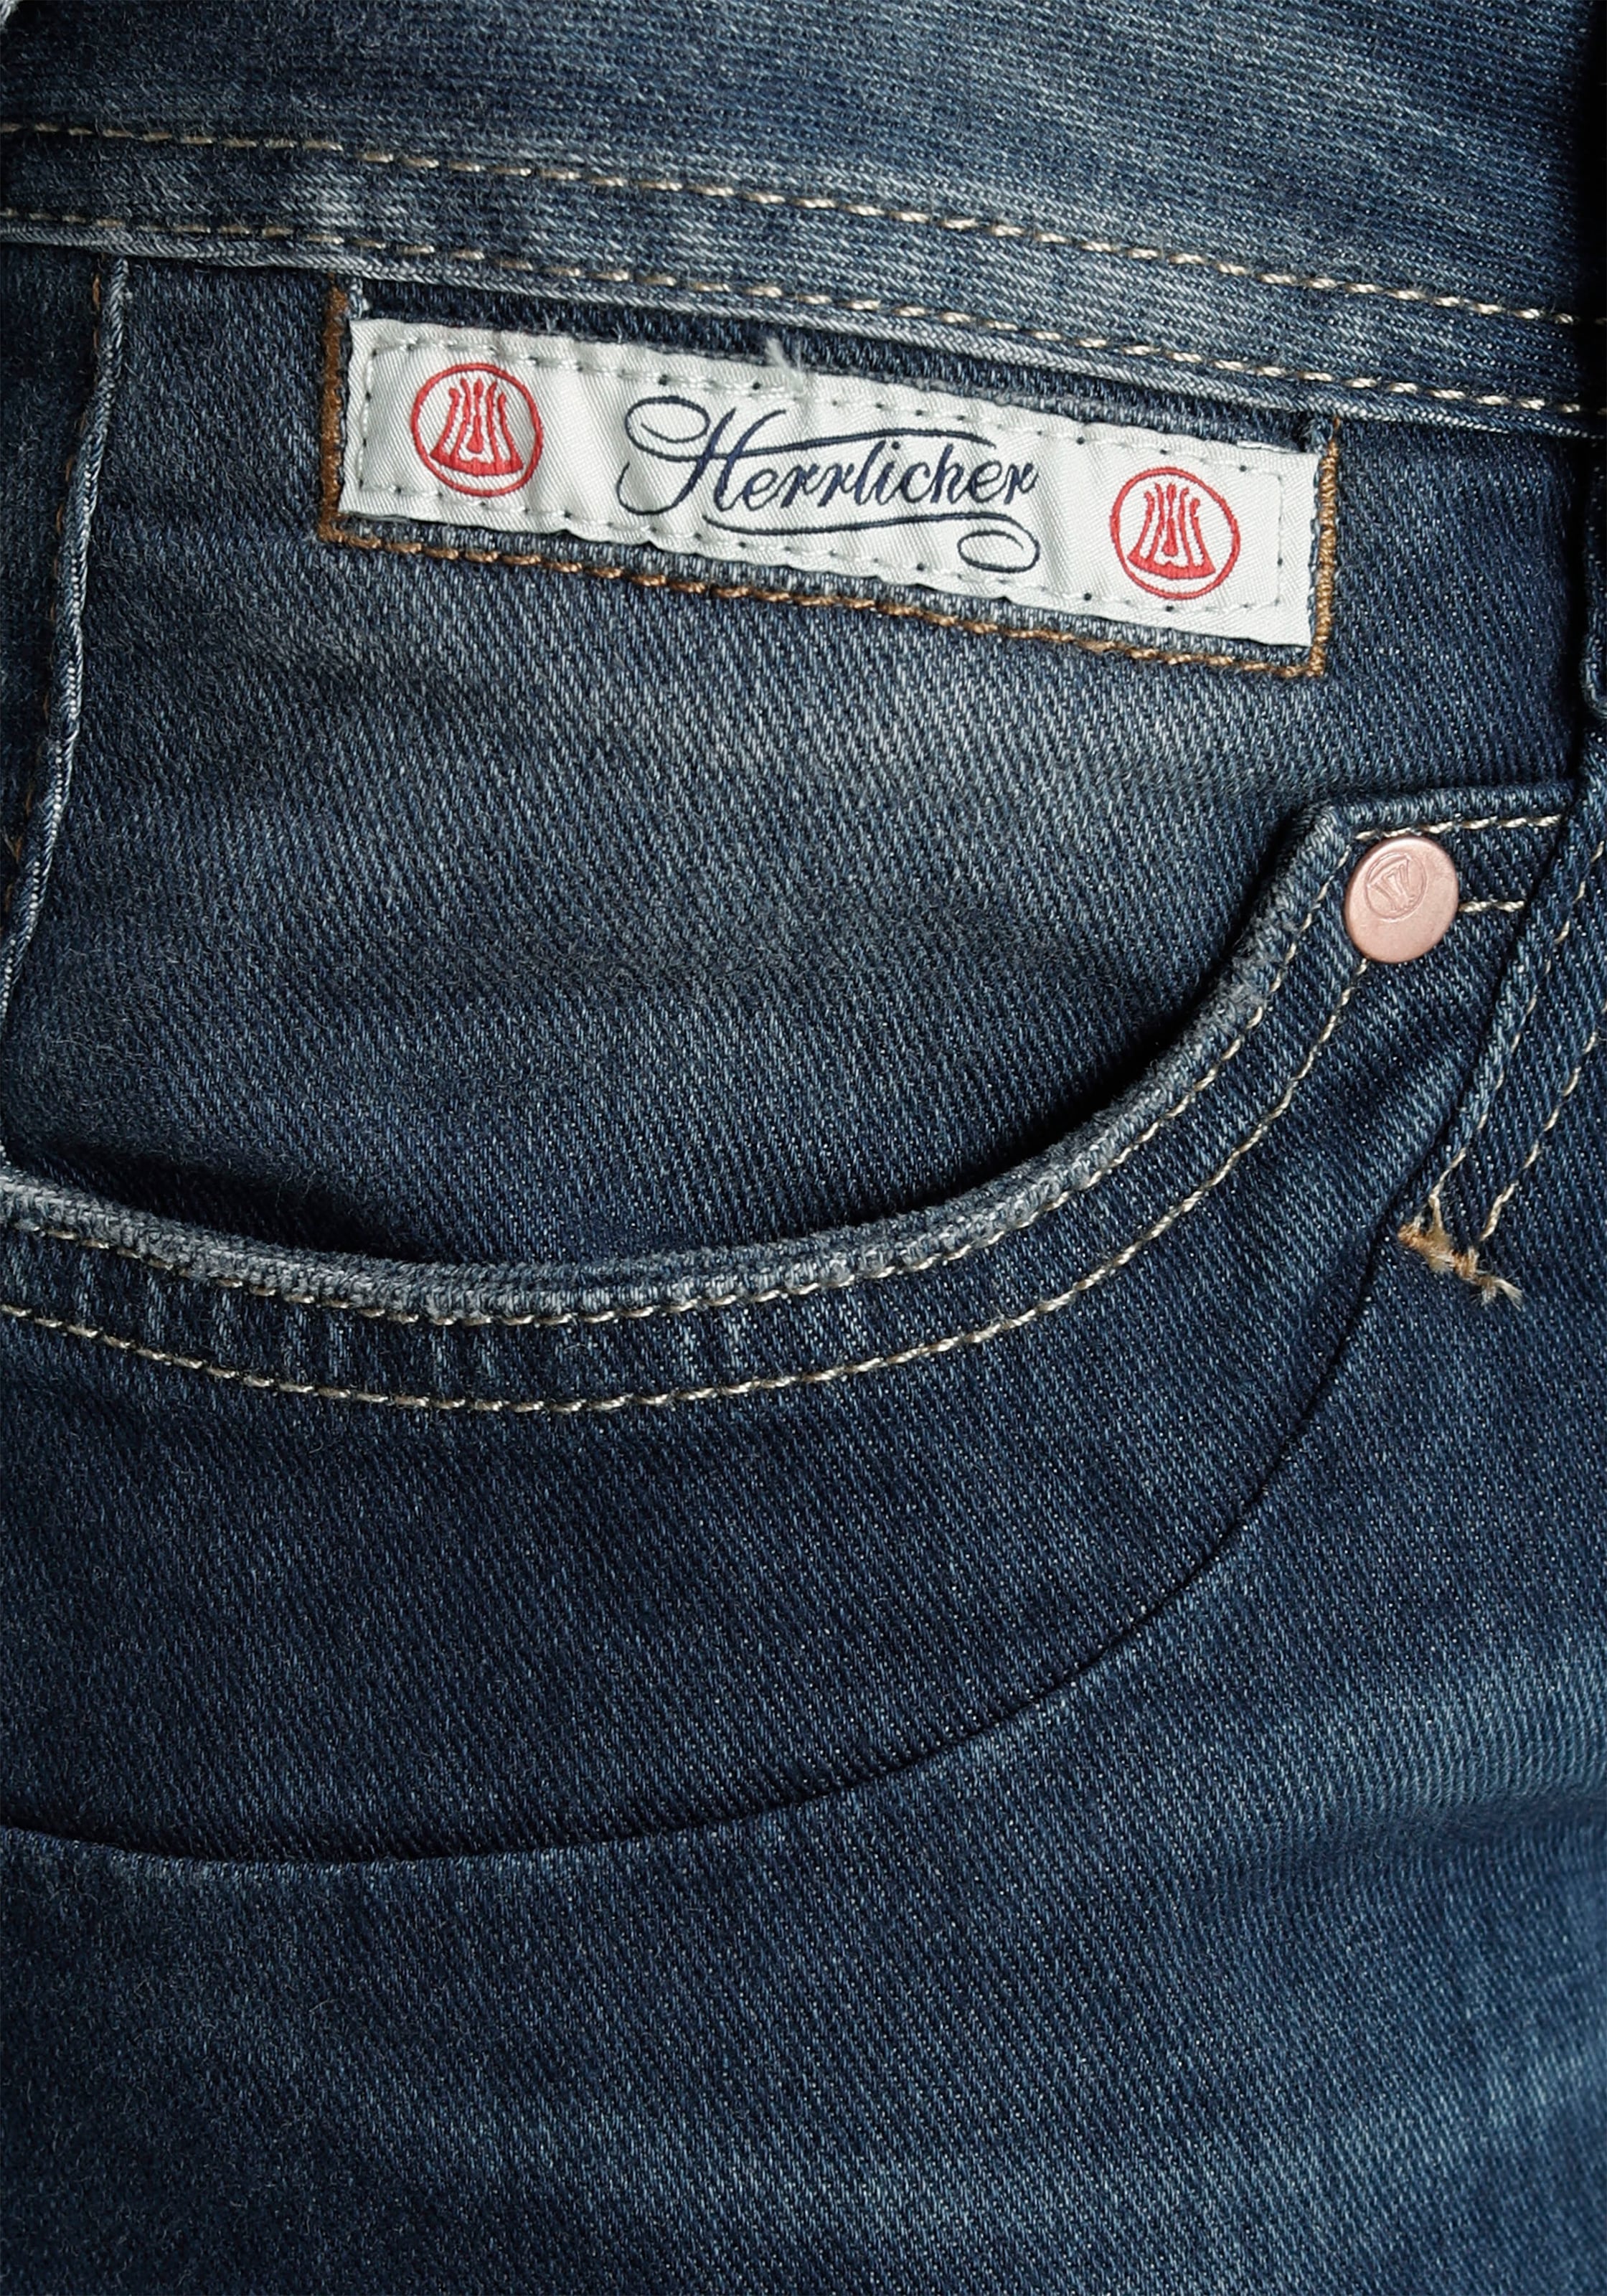 Kitotex Herrlicher dank umweltfreundlich Slim-fit-Jeans BAUR | bestellen »PIPER«, Technologie